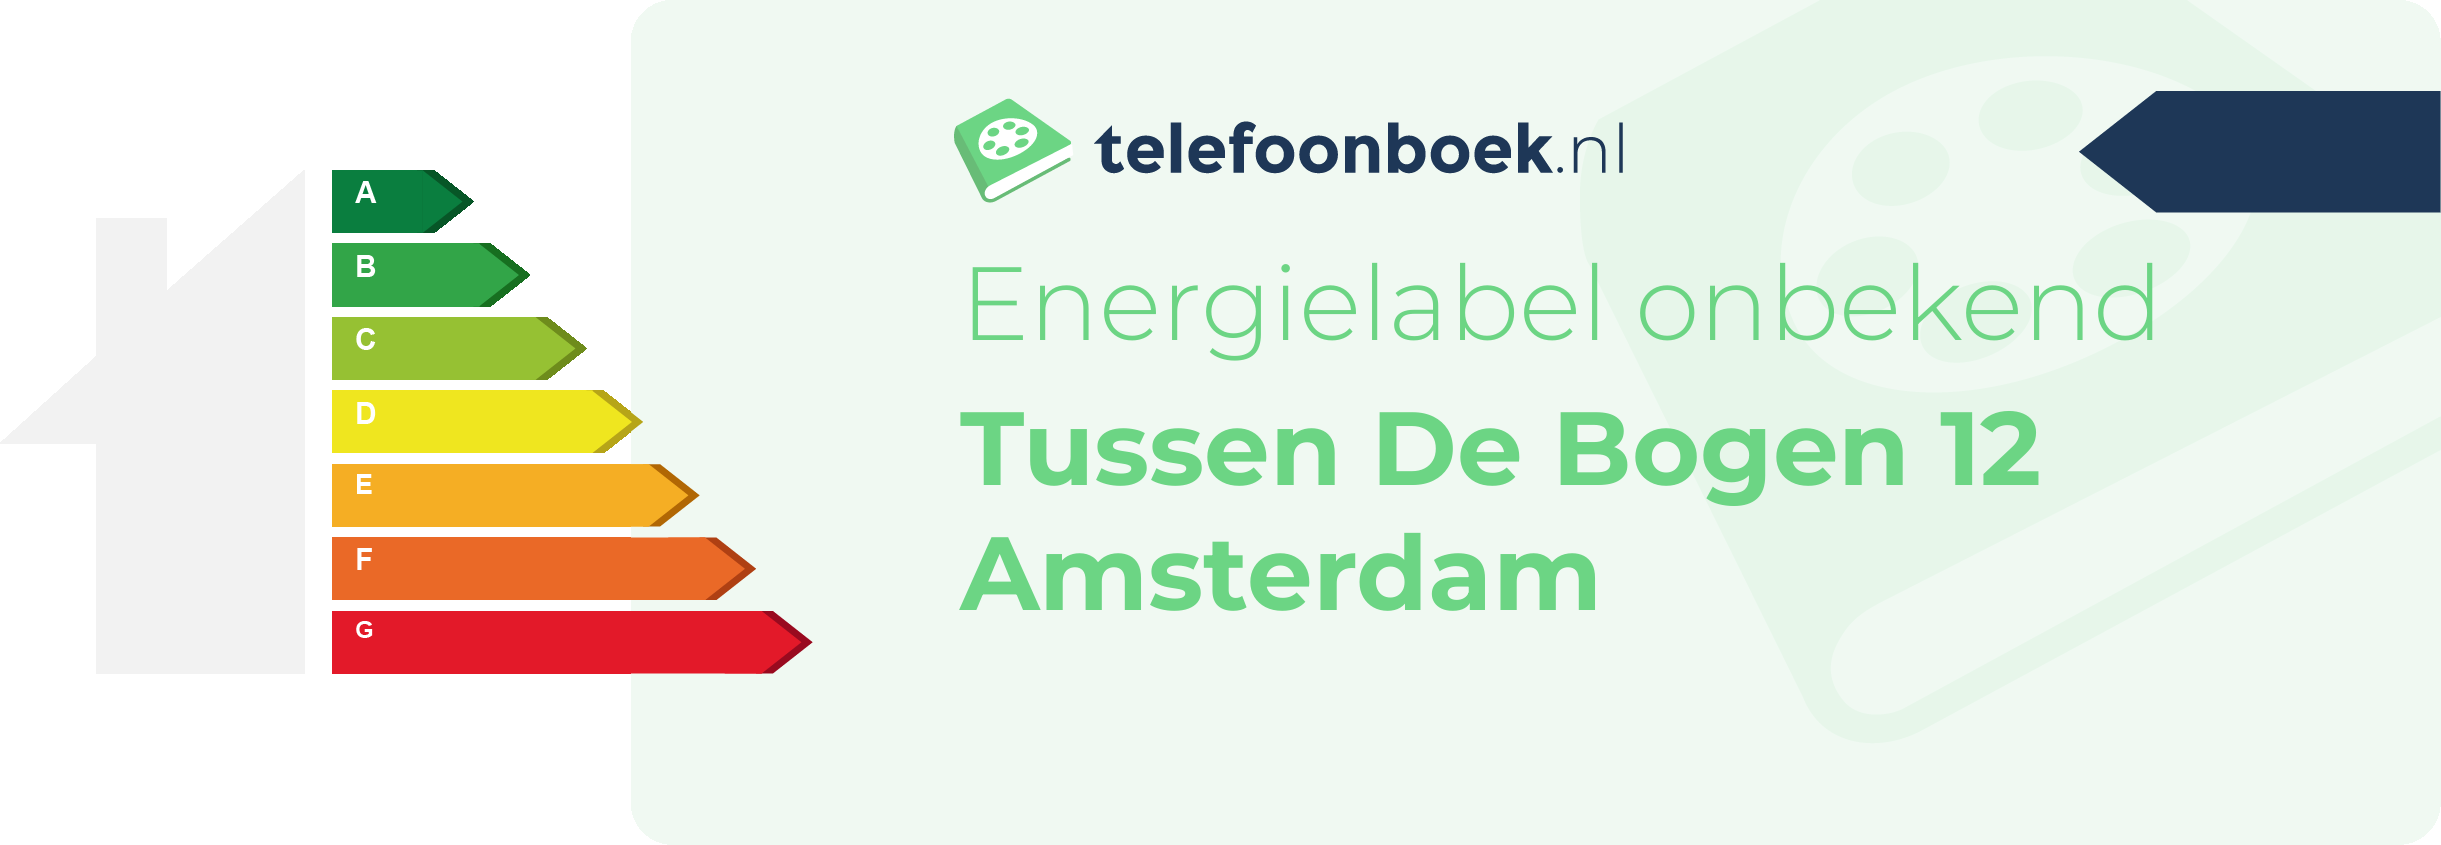 Energielabel Tussen De Bogen 12 Amsterdam